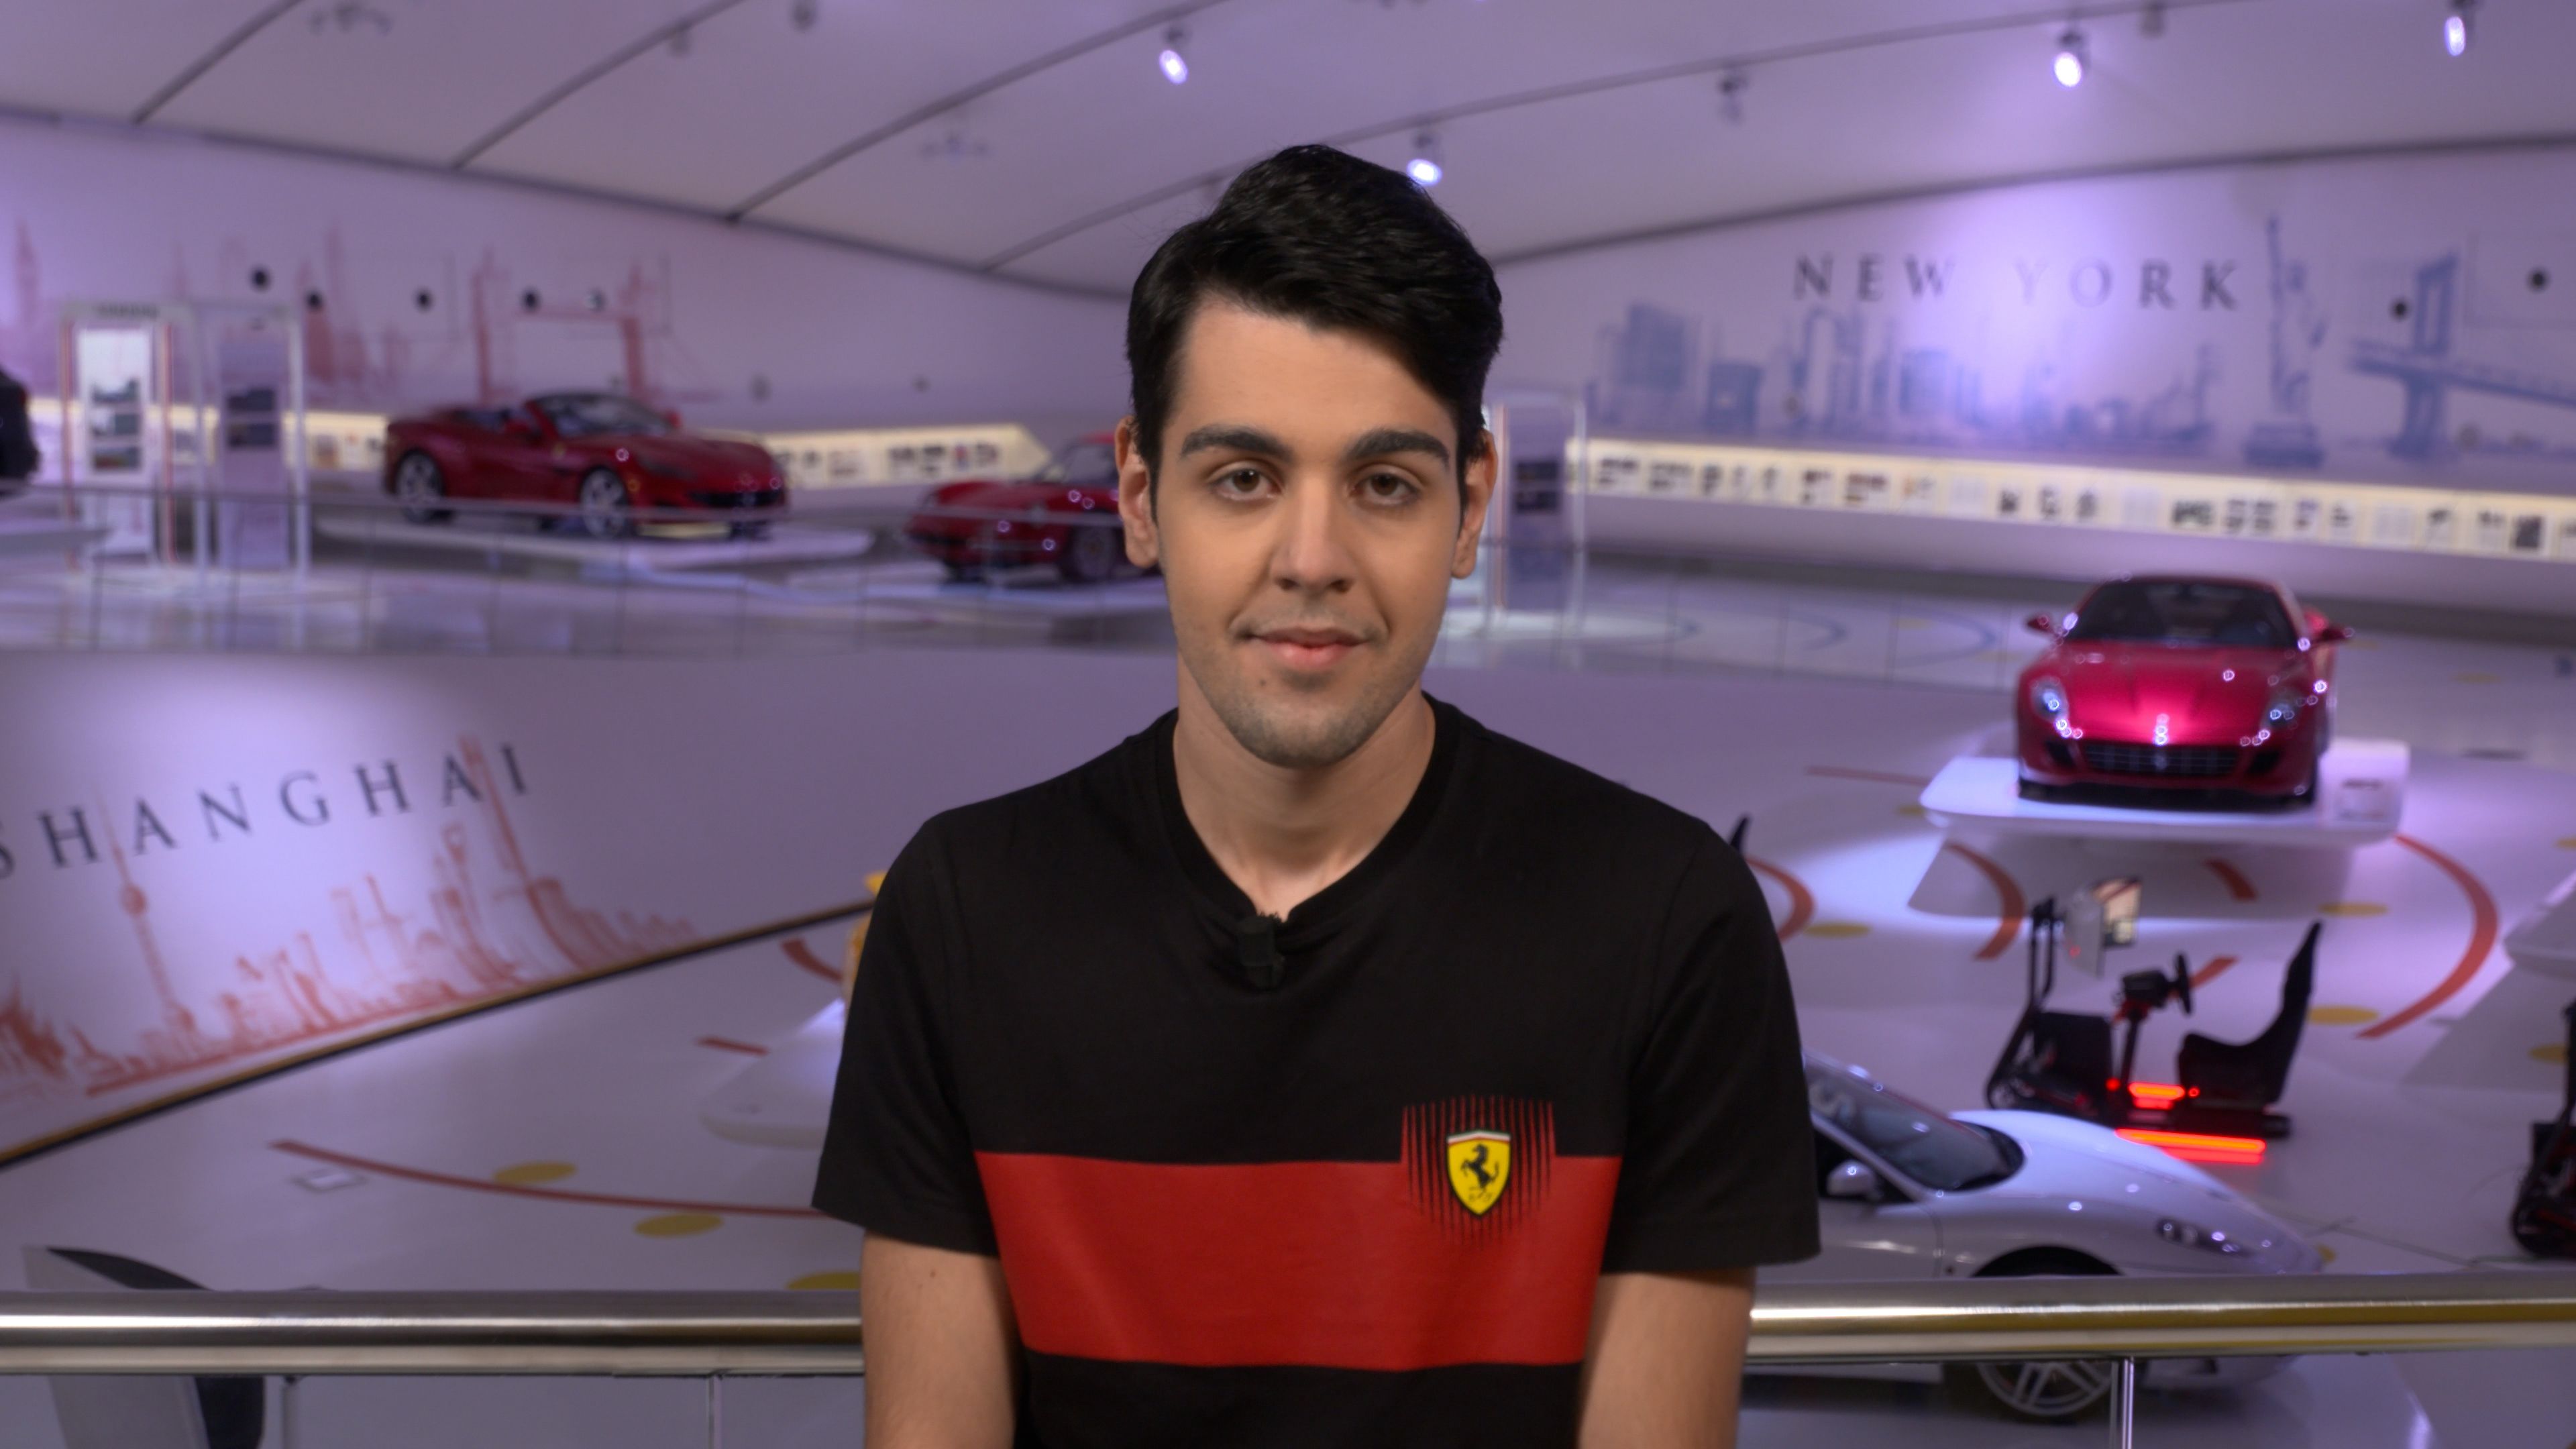 Ferrari Esports Series 2021